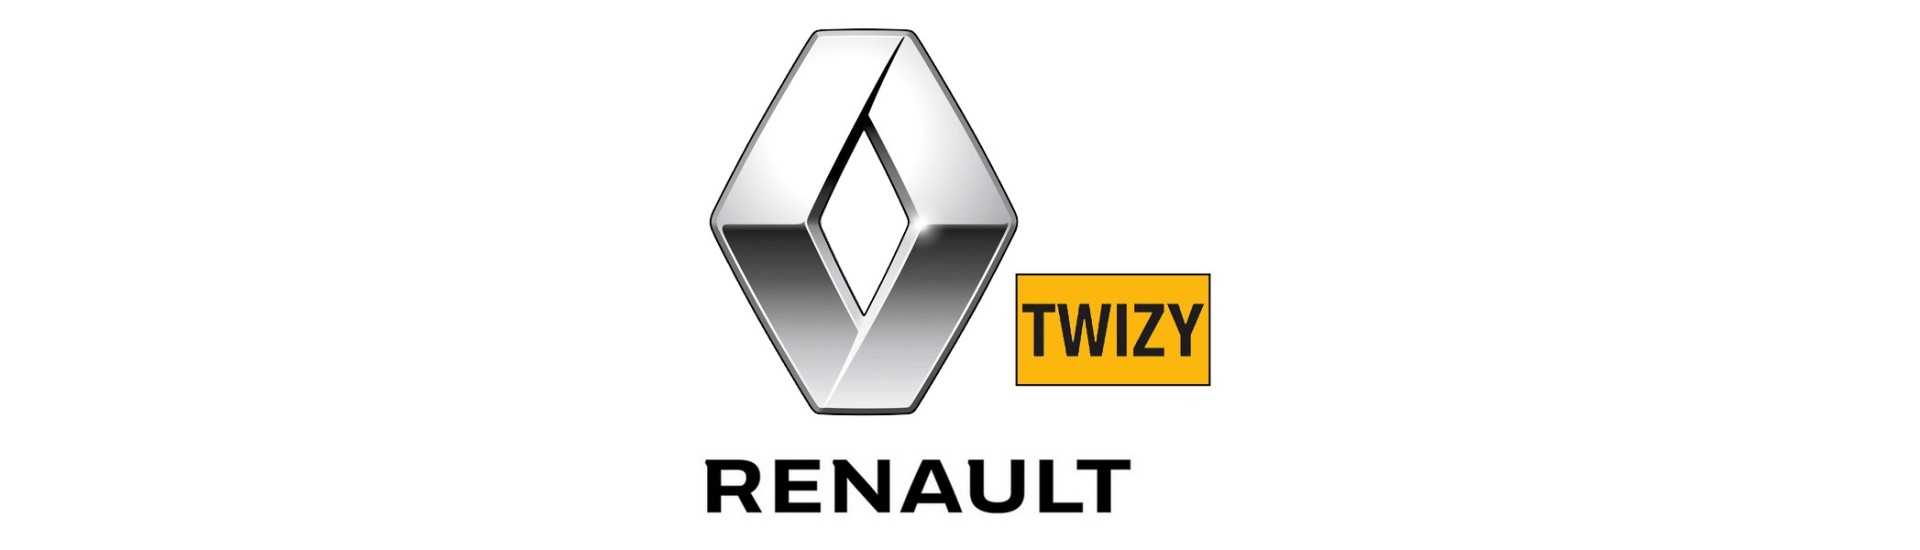 Defletor de ar ao melhor preço para carros sem licença Renault Twizy